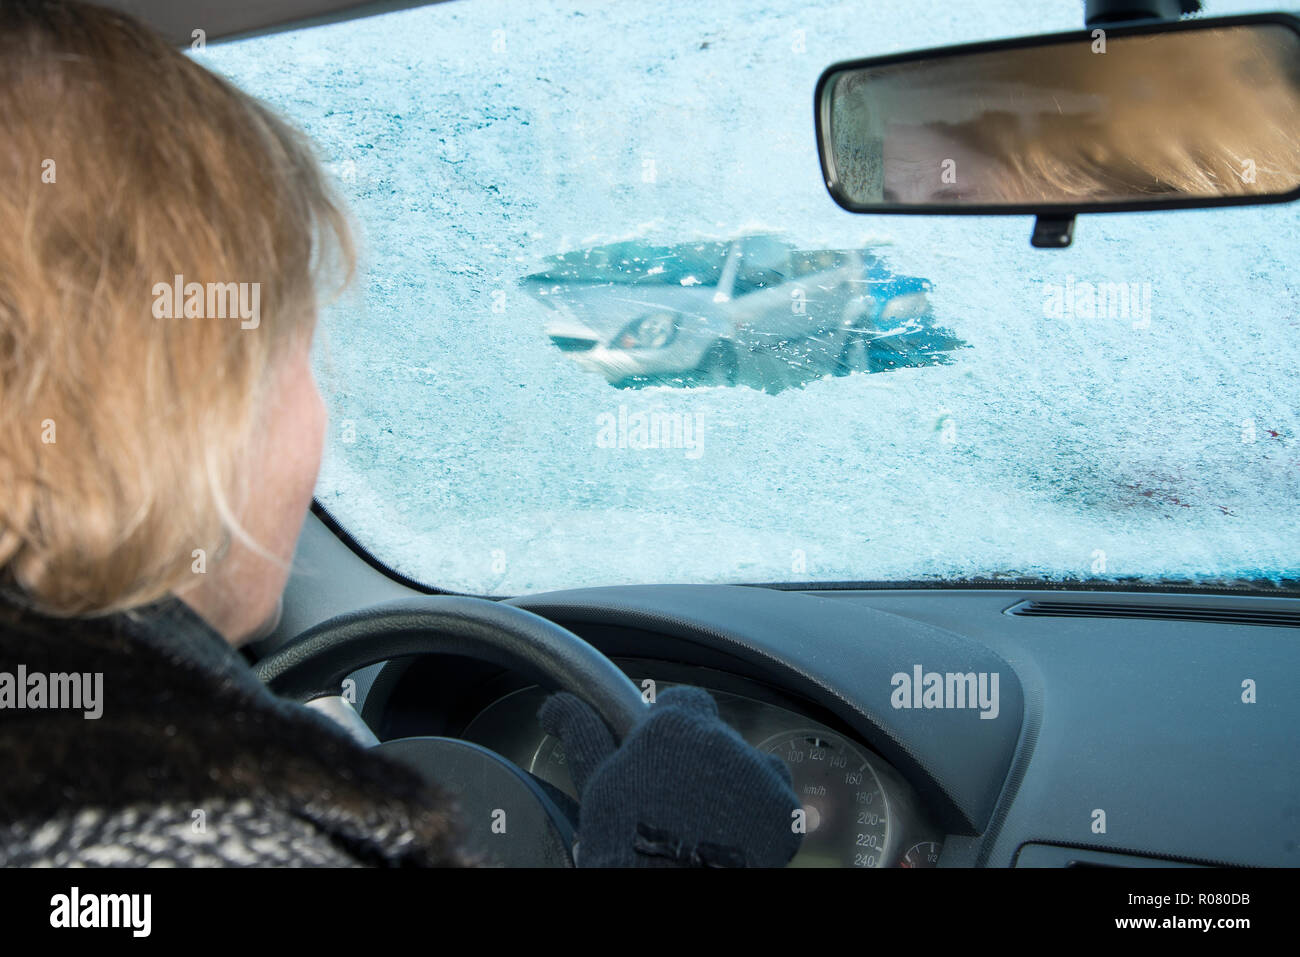 La femme est à la recherche d'une voiture par un petit écart rayé dans un pare-brise glace Banque D'Images